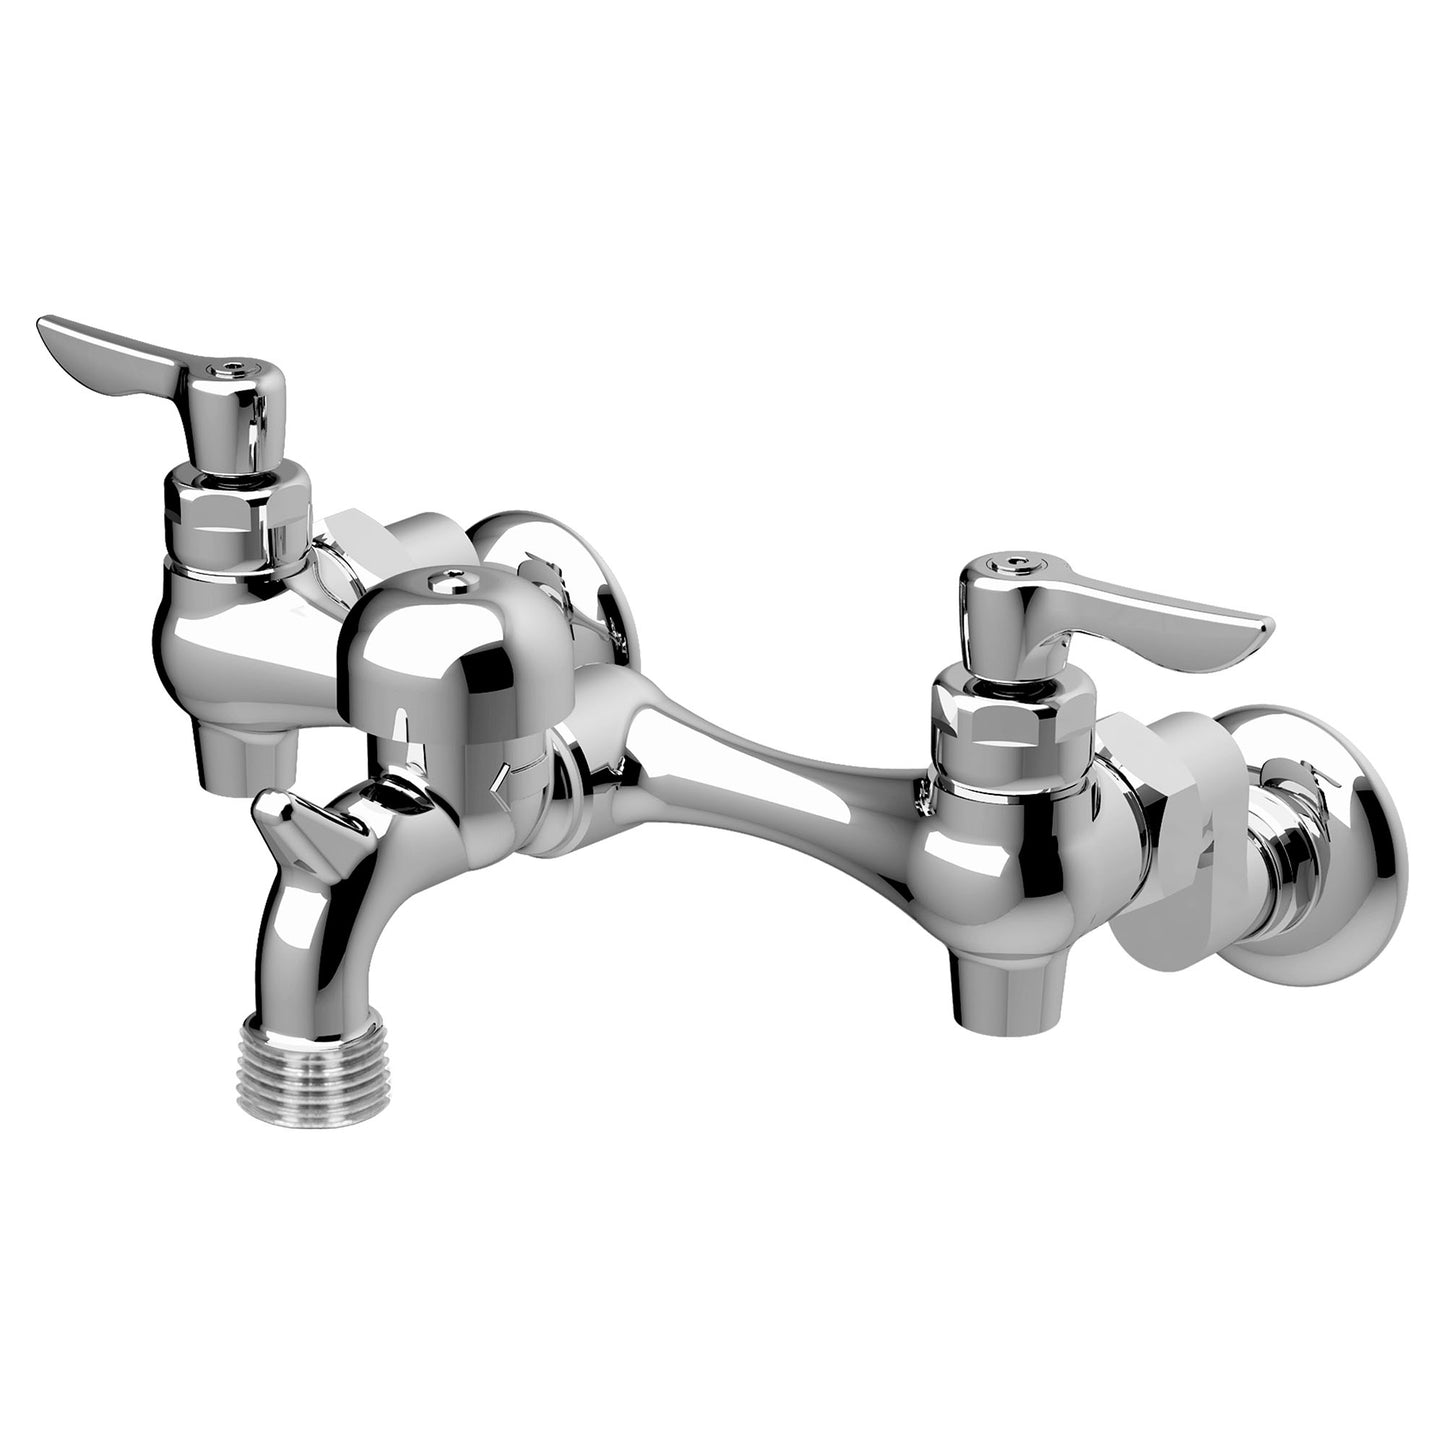 8351076.004 - Wall Mount Service Sink Faucet - 3" VB Spout - Rough Chrome